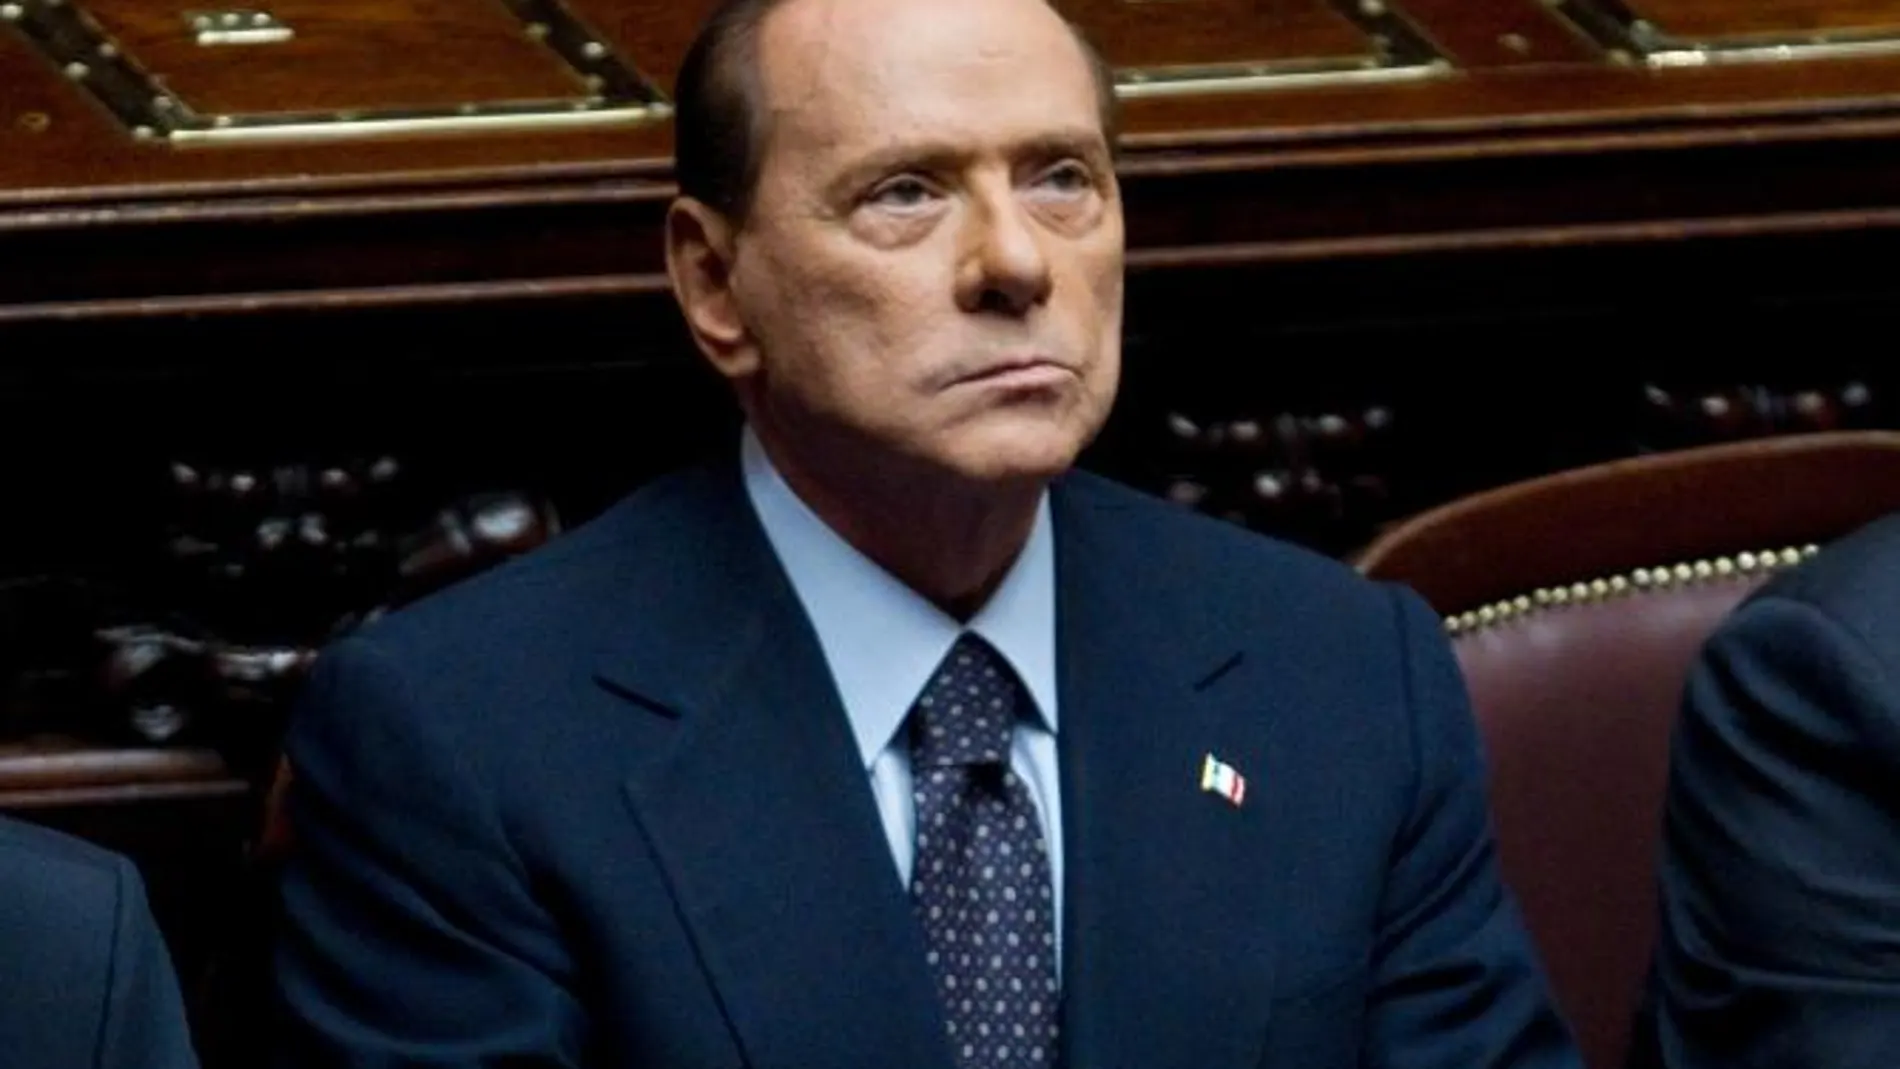 Berlusconi dimitirá tras la aprobación de las reformas prometidas a la UE